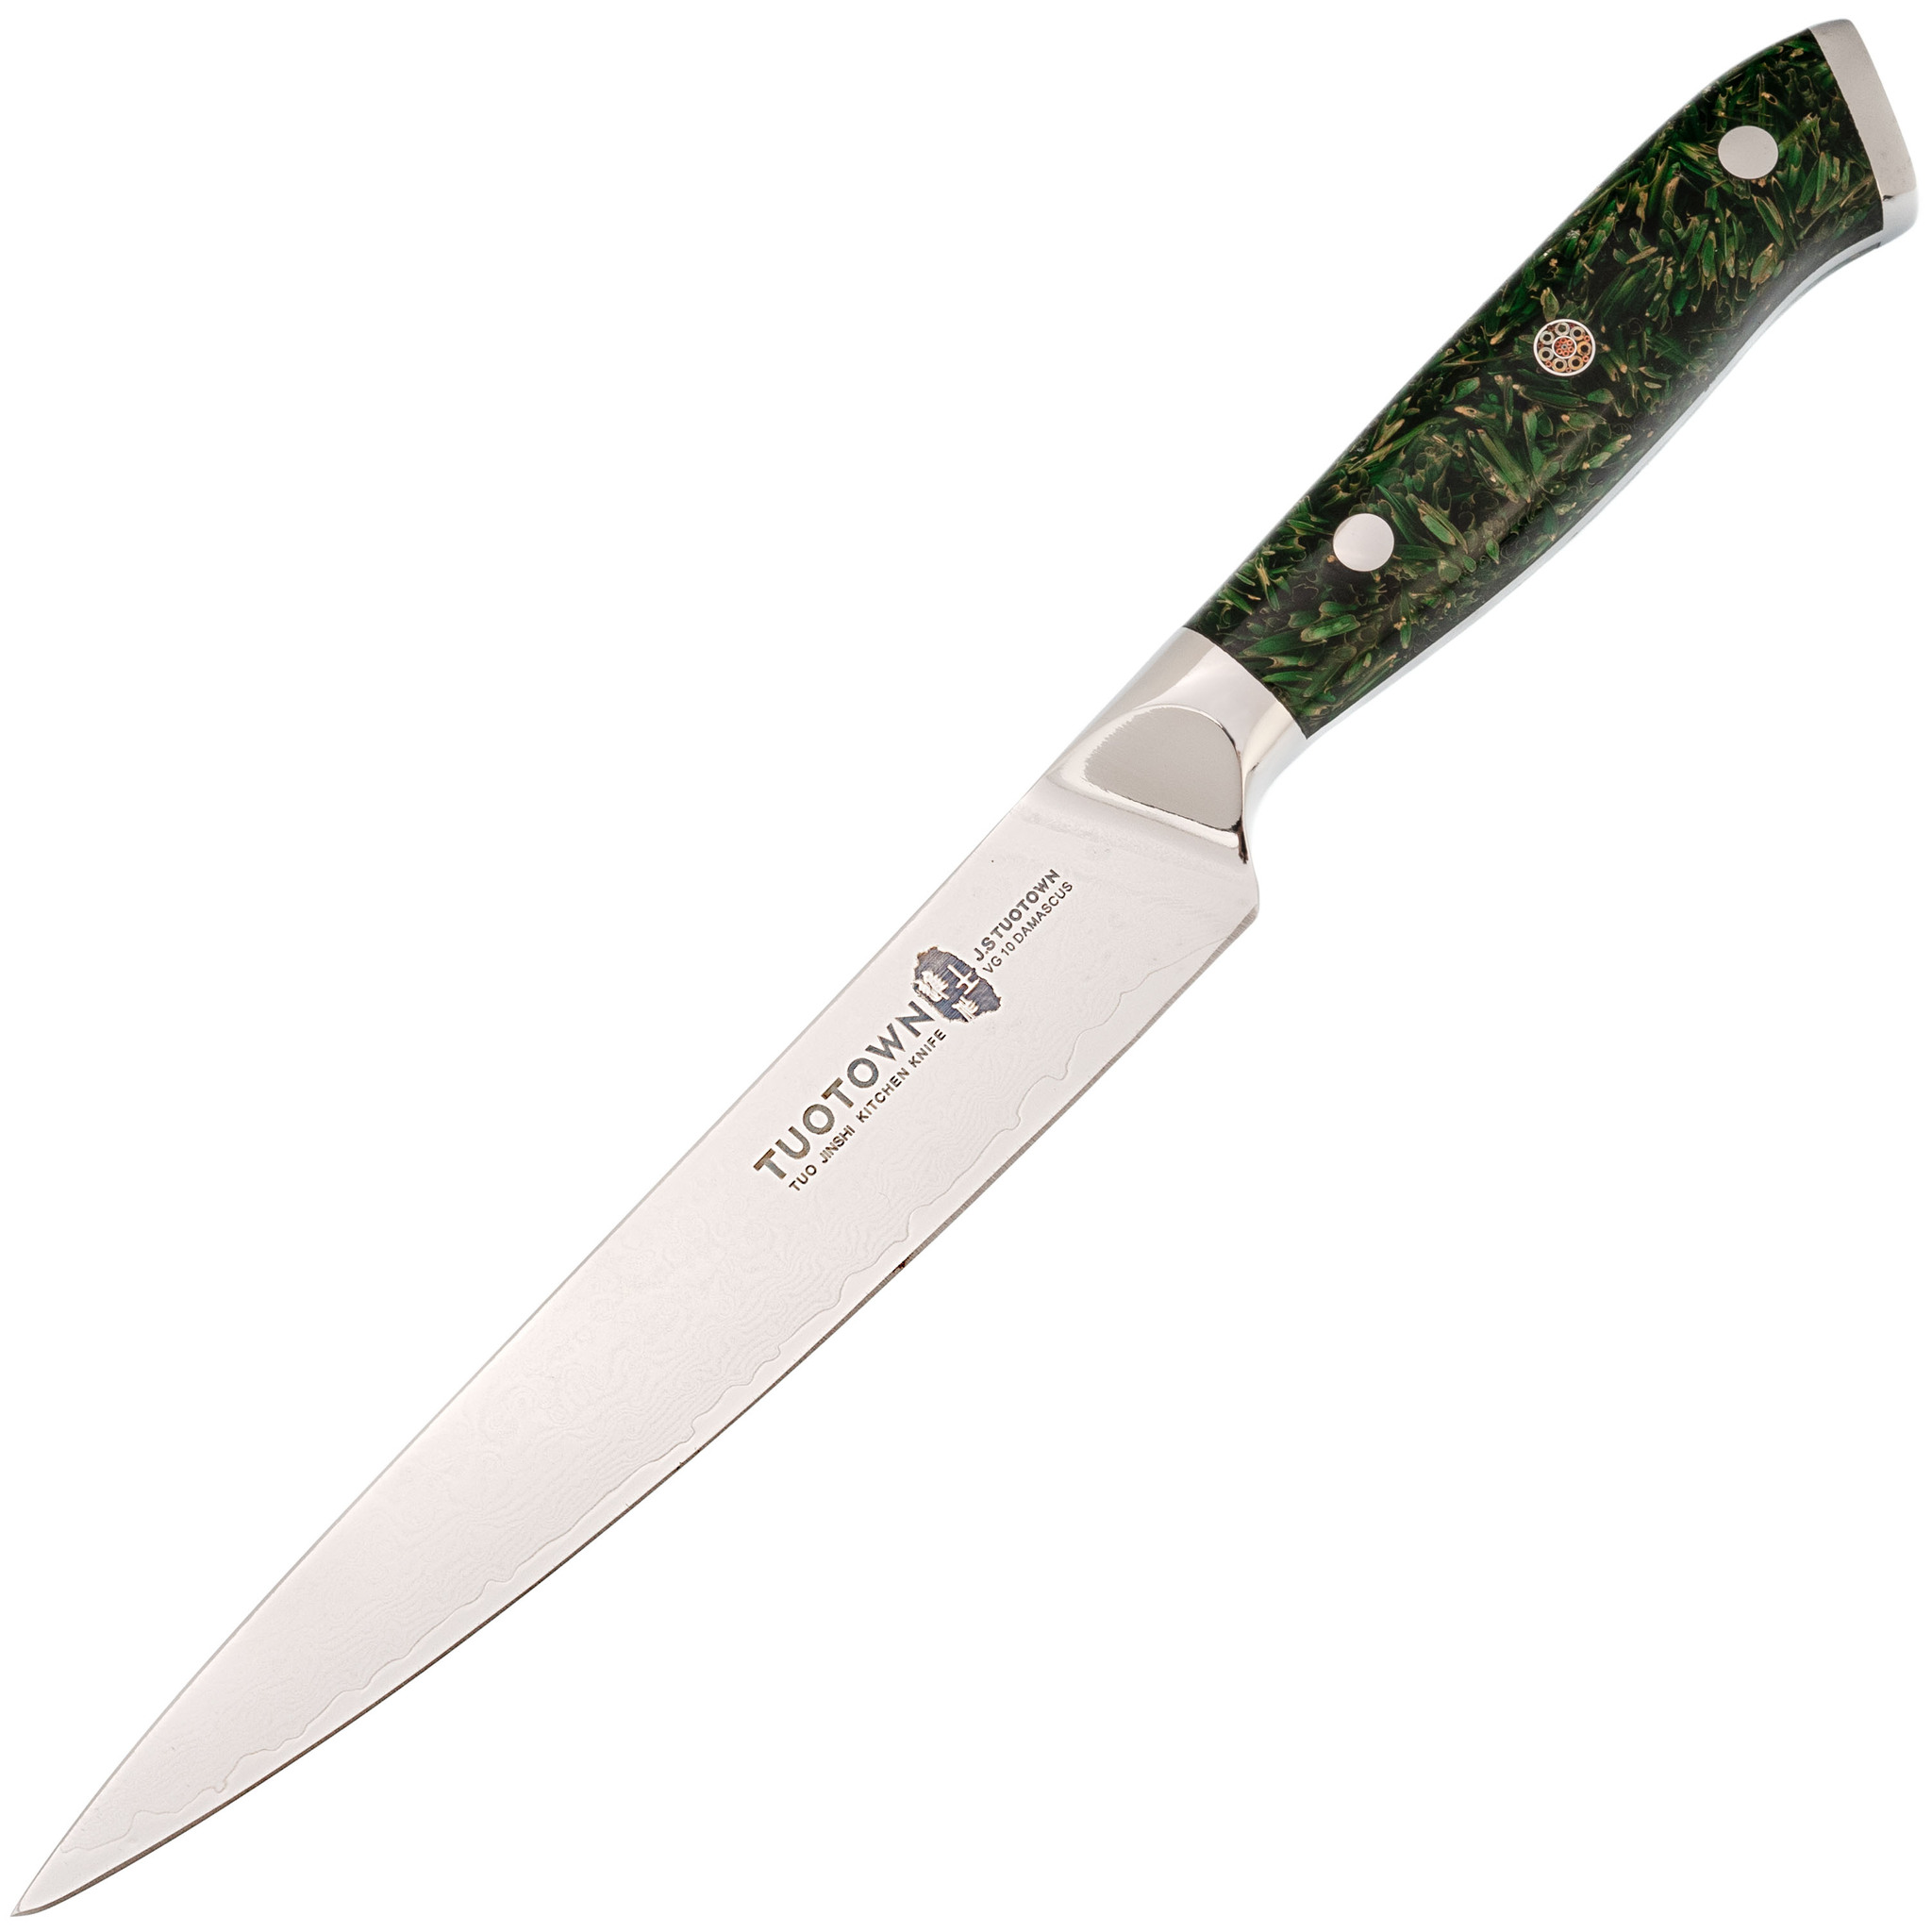 Кухонный нож Tuotown, сталь VG10, обкладка Damascus, рукоять акрил, зеленый